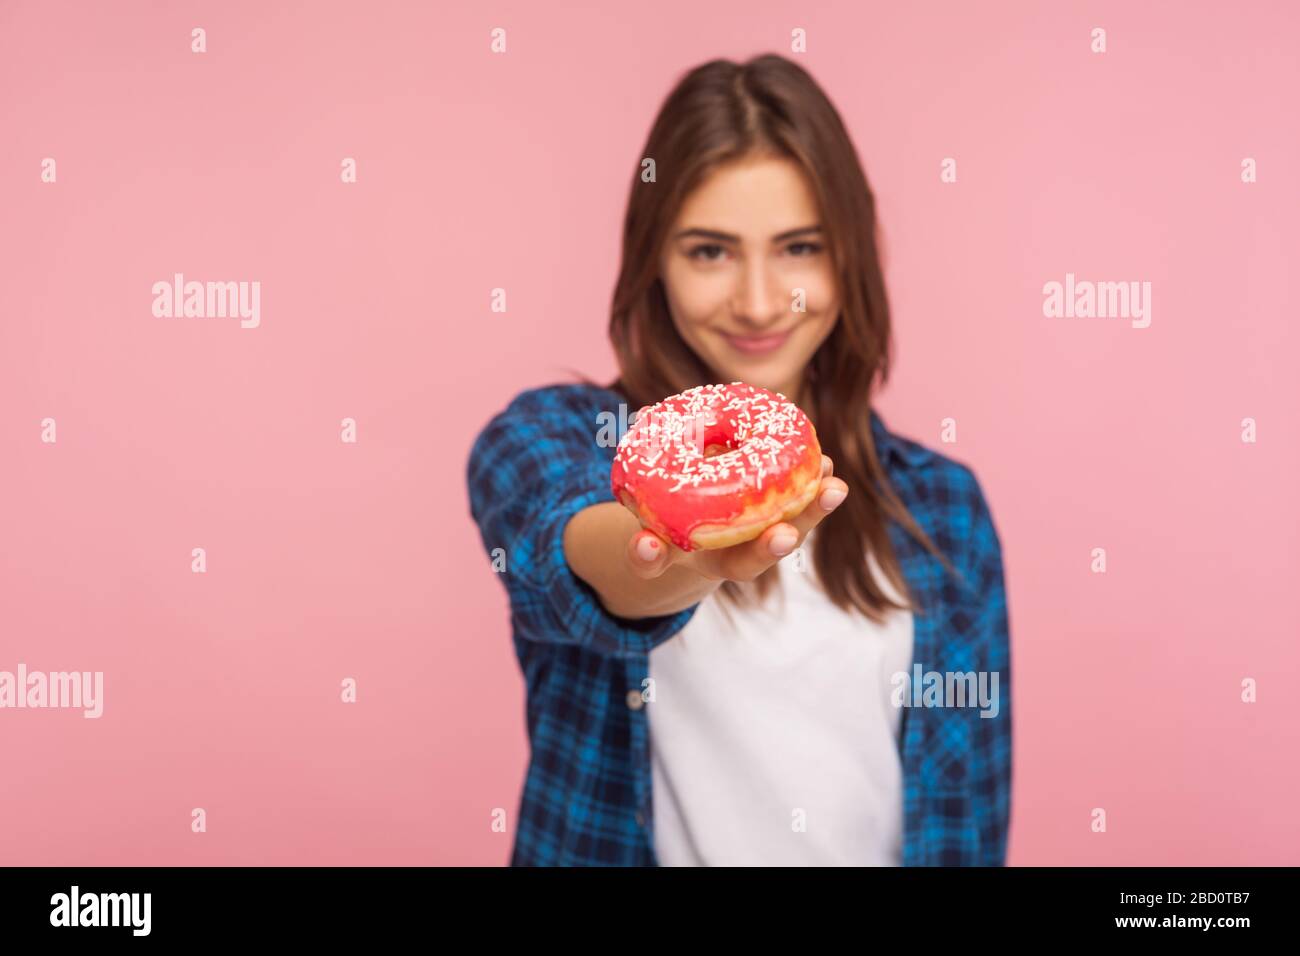 Portrait des positiven Mädchens im karierten Hemd, das leckeren Donut aushält und mit einem Lächeln auf die Kamera lächelt und gesüßte Süßwaren zeigt, die hoch in Glukose und Kalori sind Stockfoto